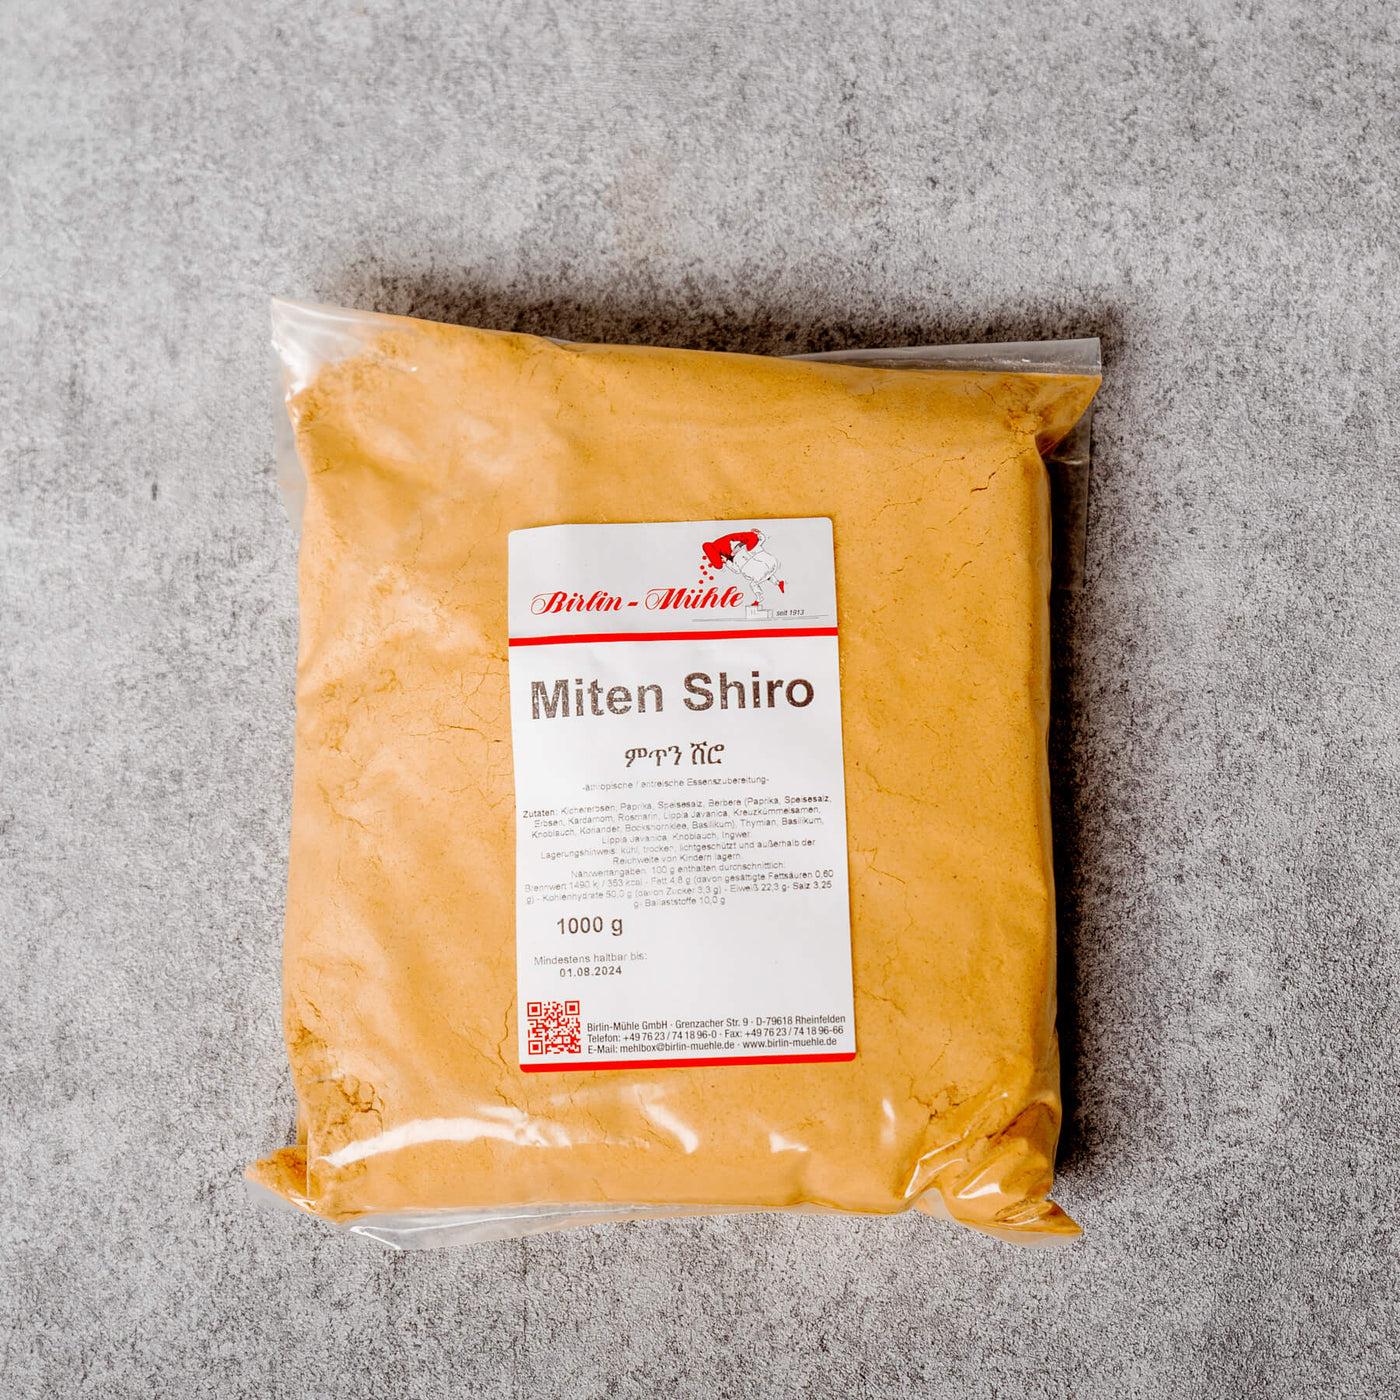 Birlin Mühle - Miten Shiro